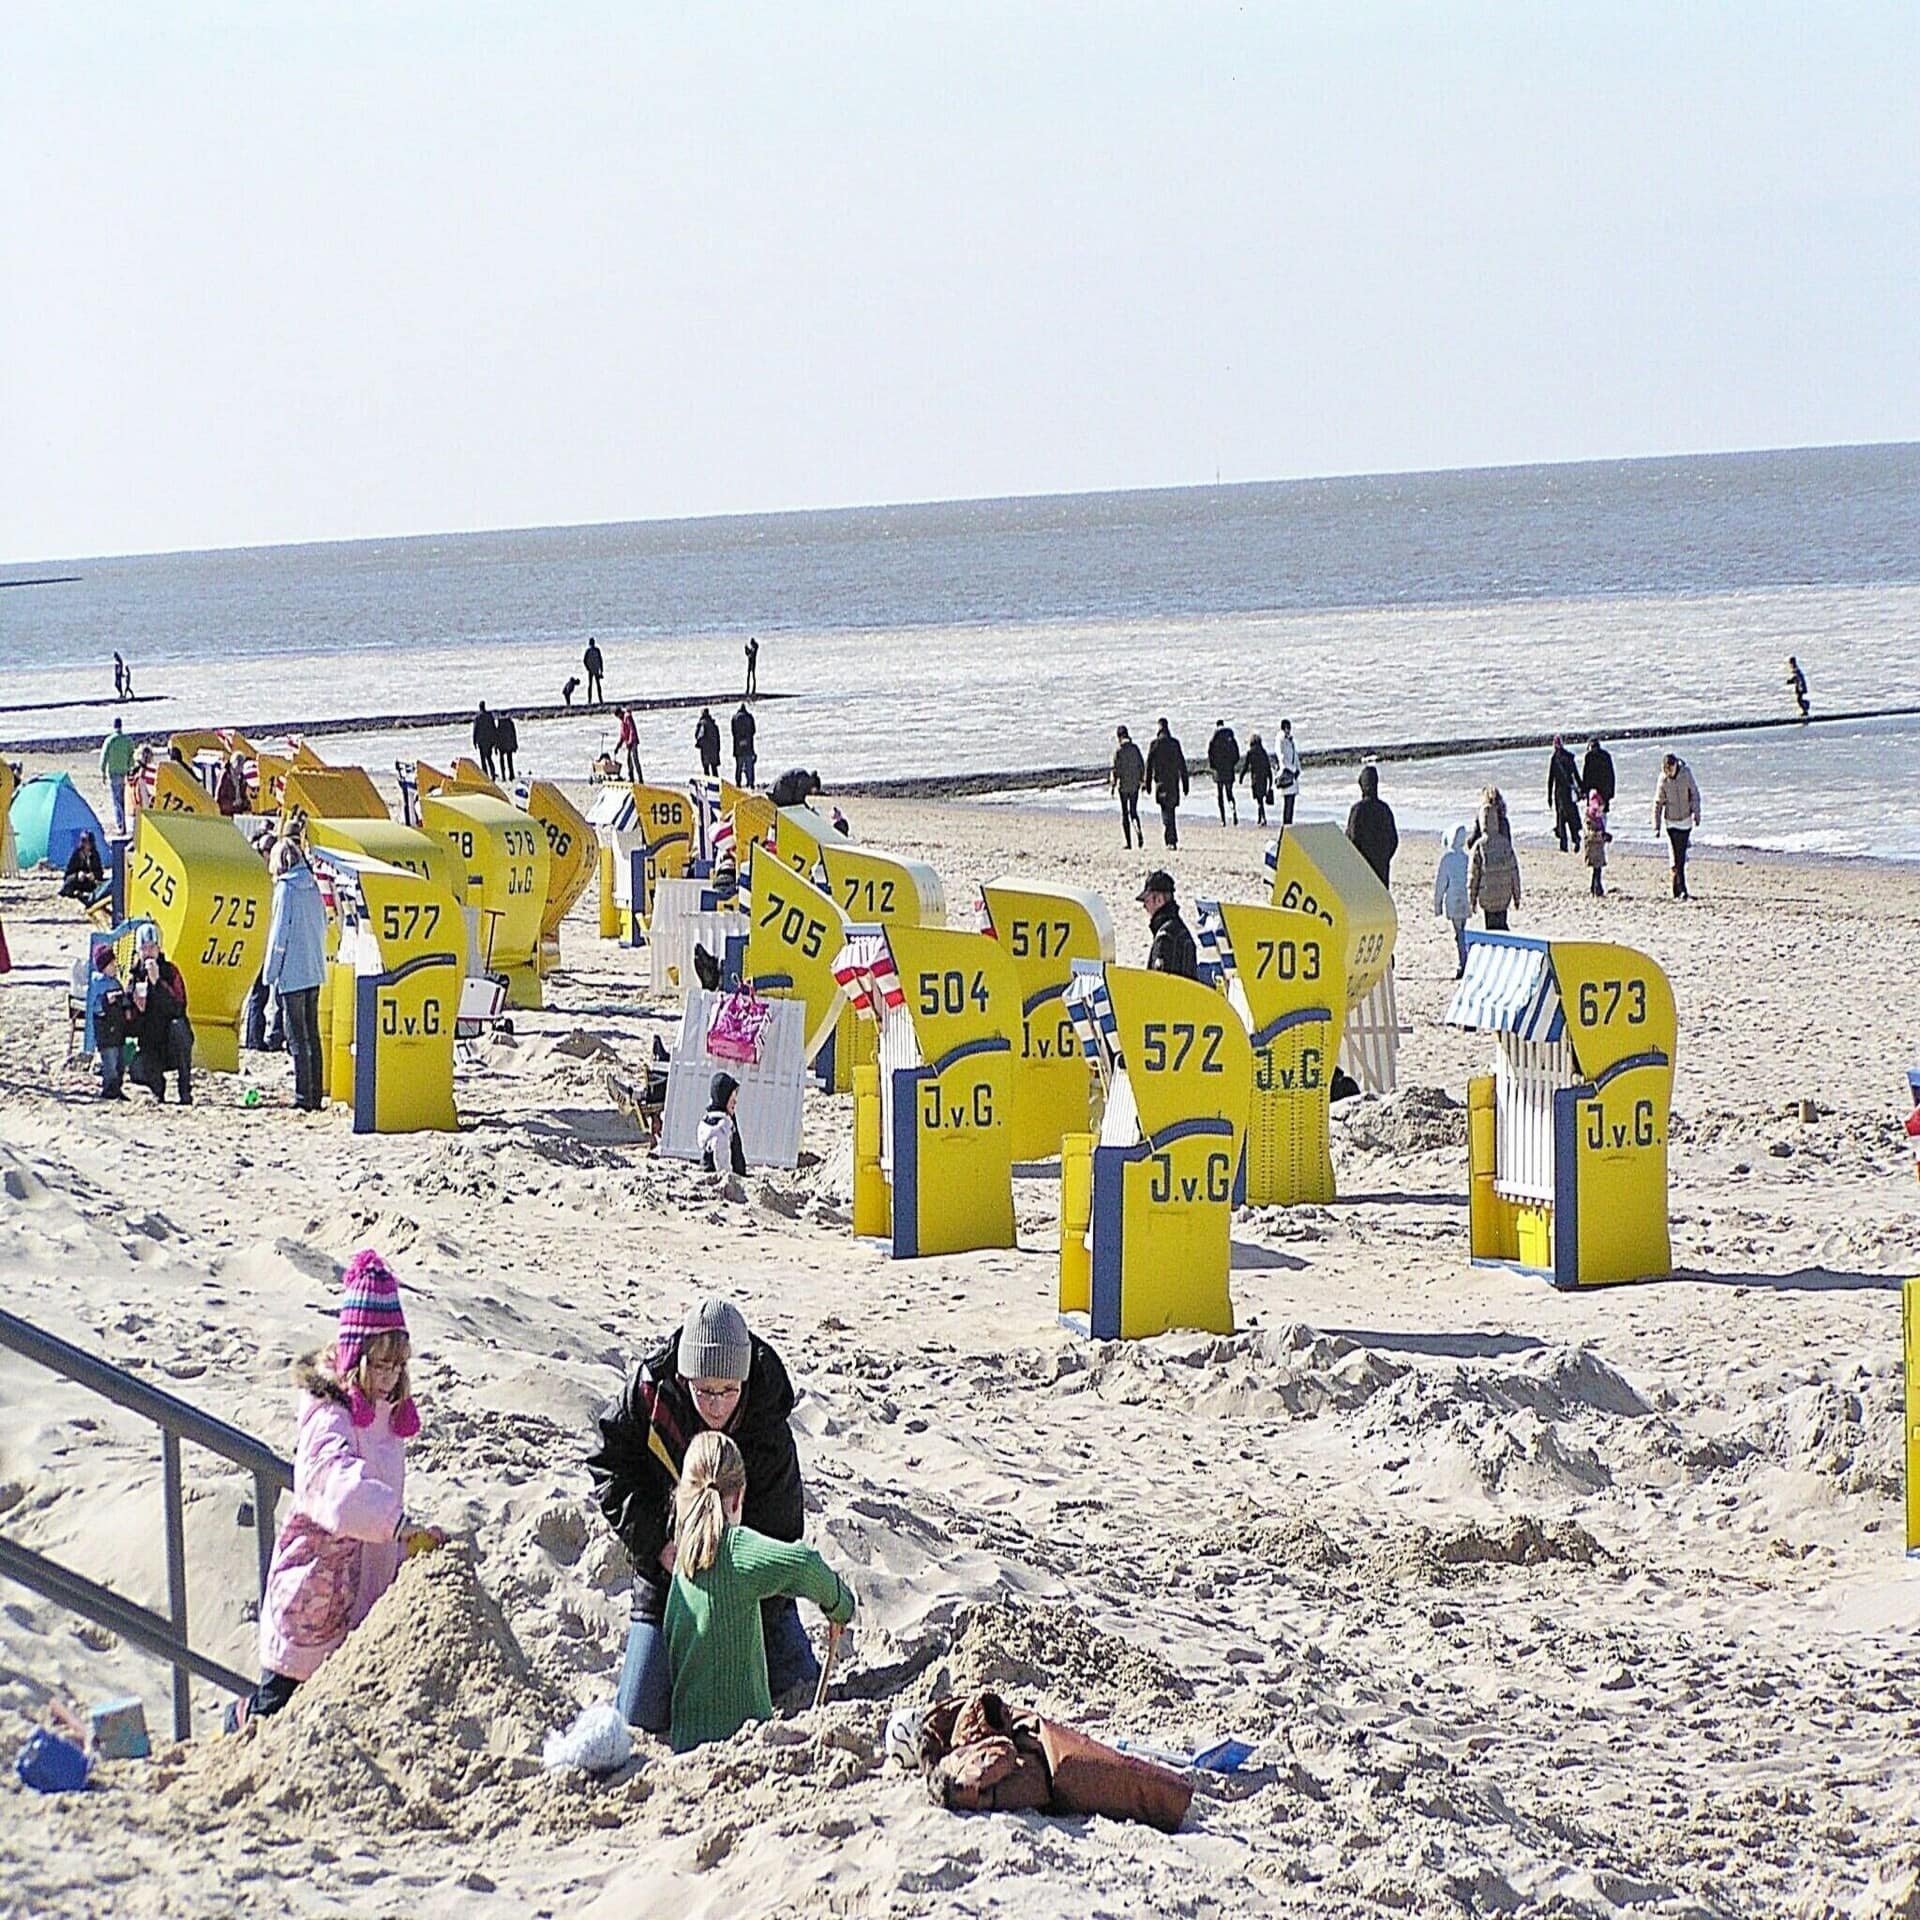 2 Kinder spielen mit einer Frau am Strand. Es sind gelbe Strandkörbe und herbstlich gekleidete Leute zu sehen. 